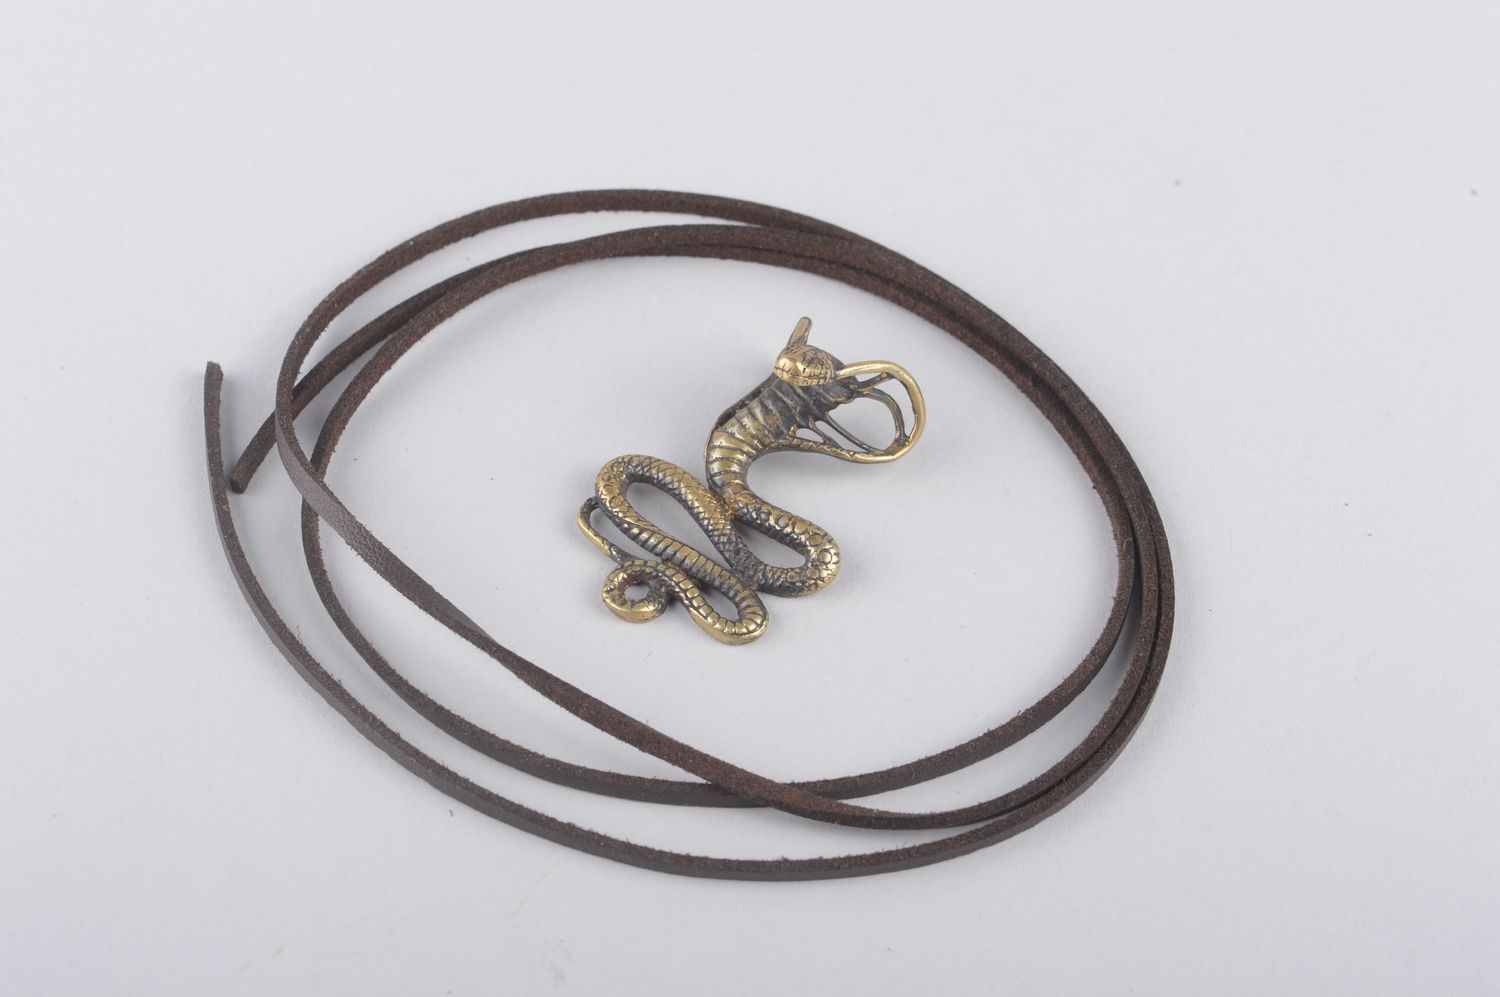 Bronze pendant handmade bronze jewelry metal pendant on cord designer jewelry photo 5